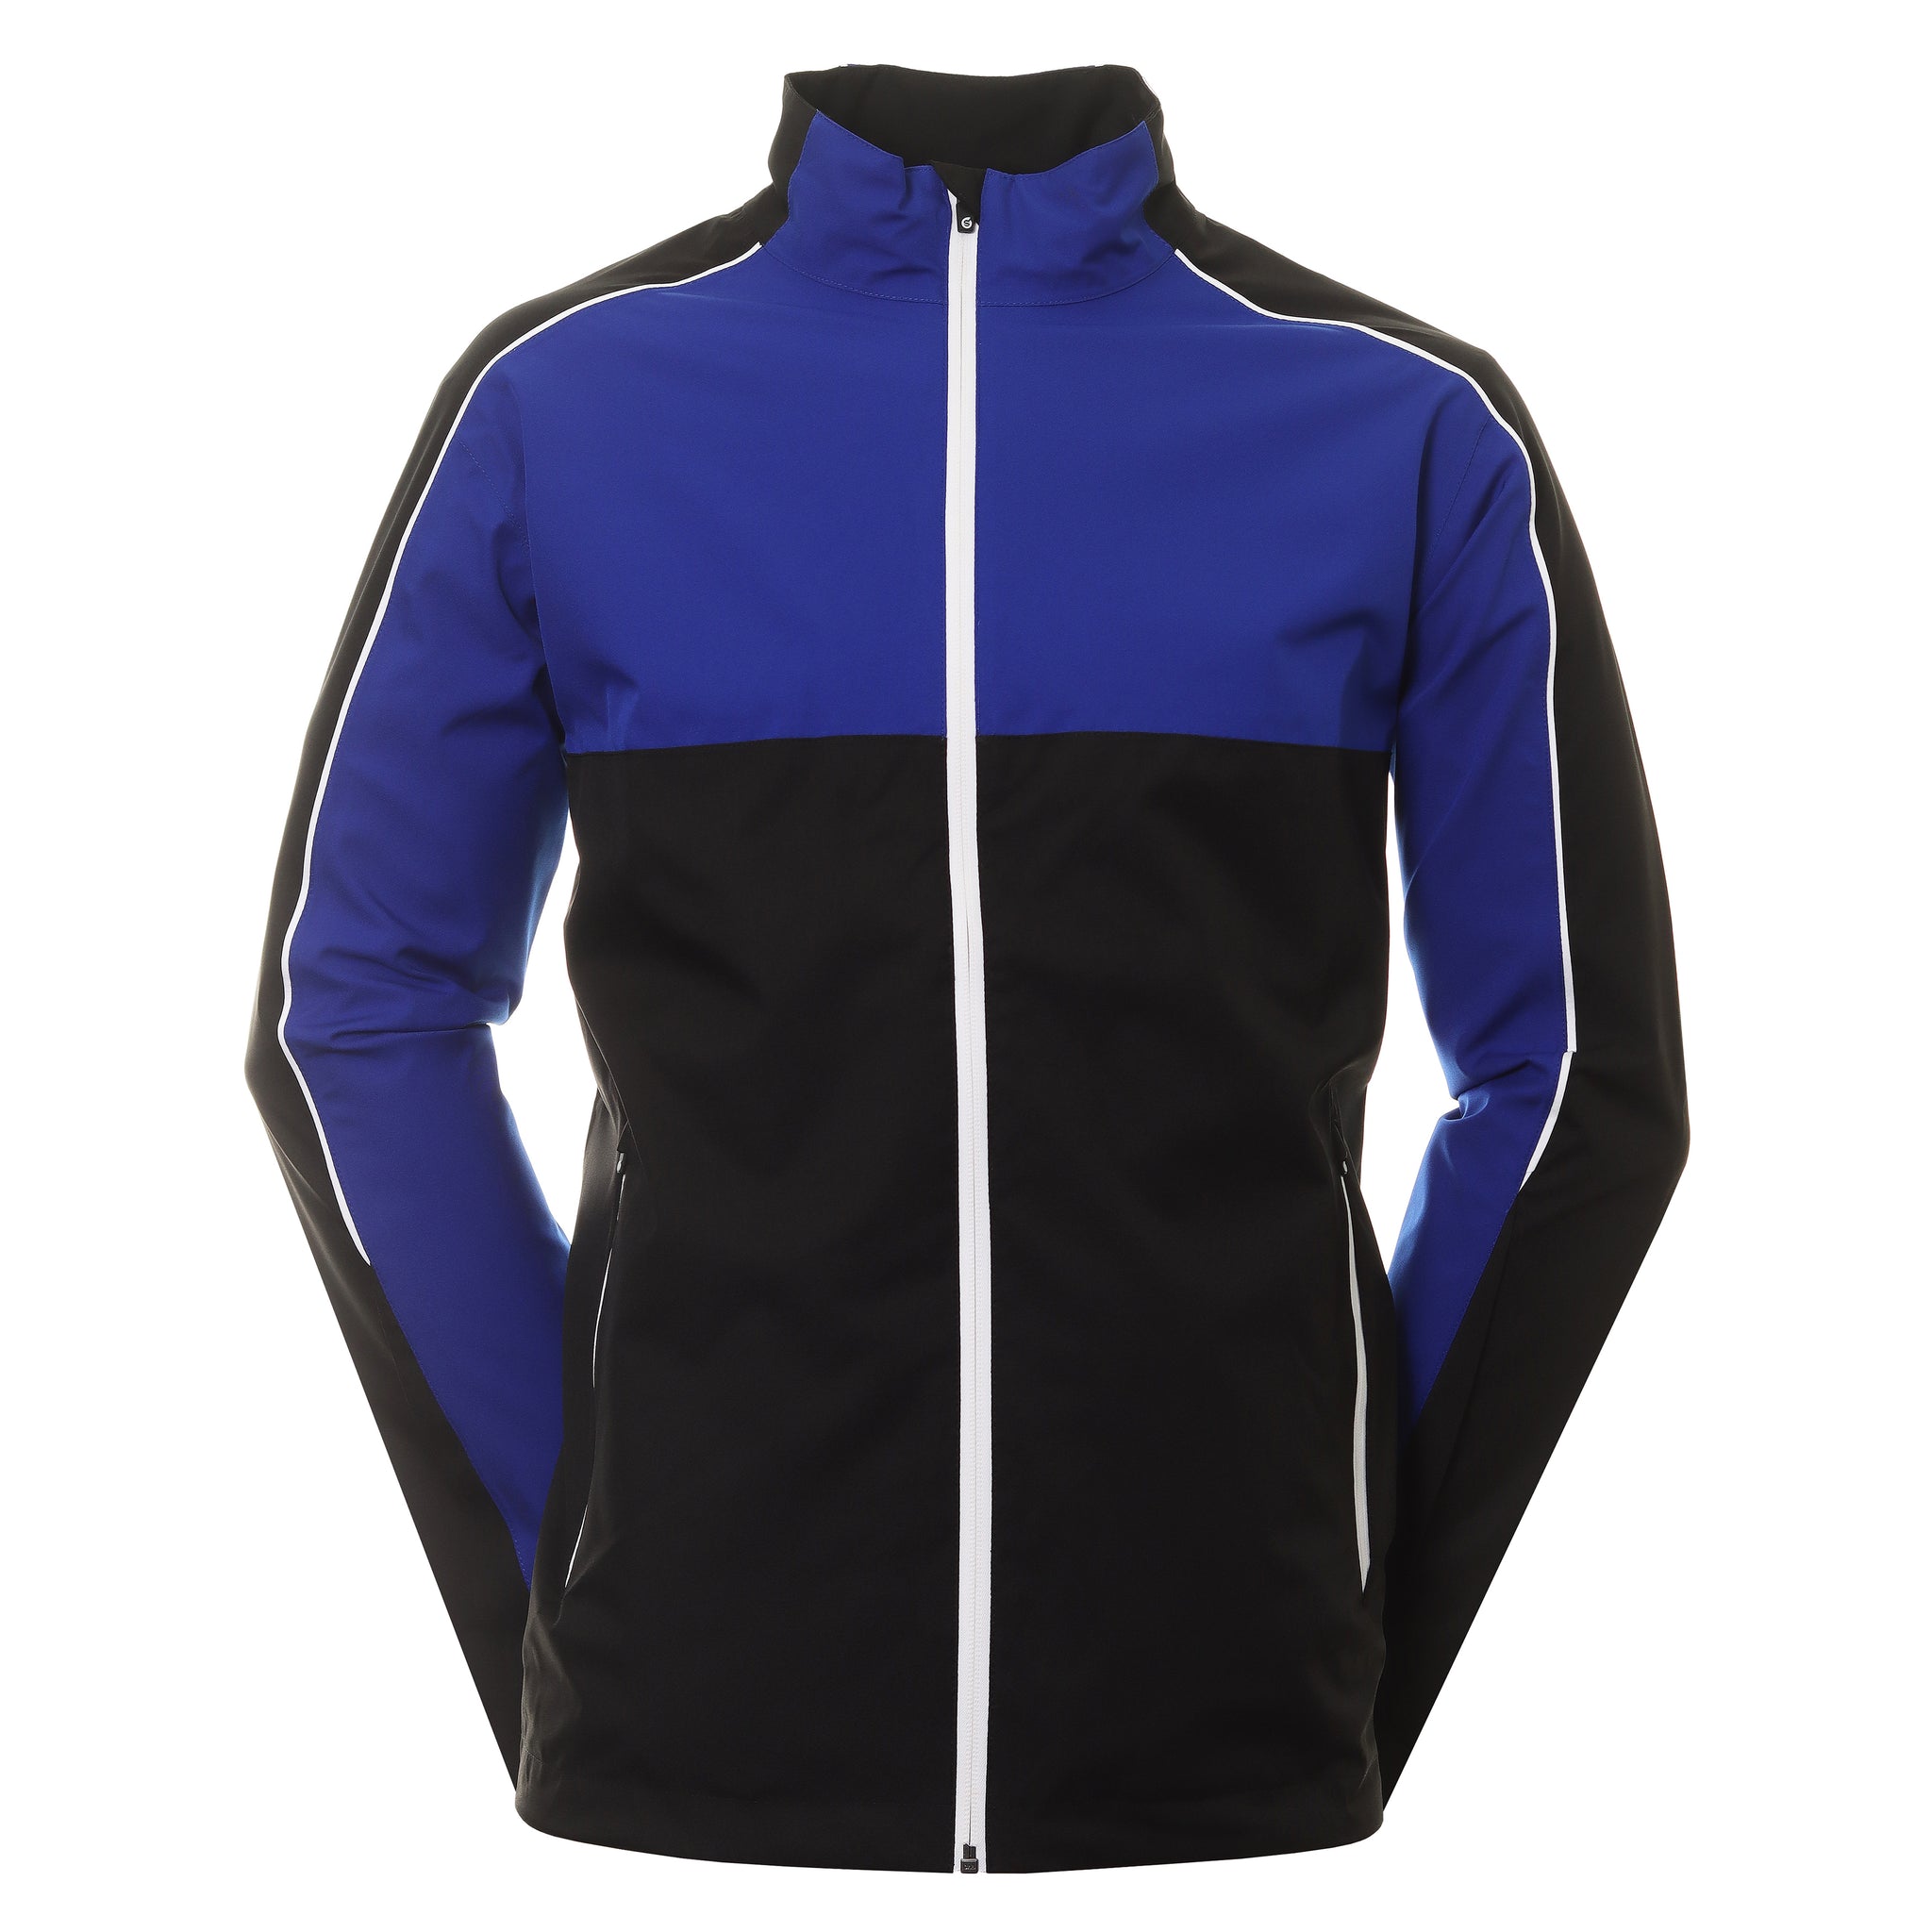 sunderland-golf-matterhorn-waterproof-jacket-sunmr91-mat-black-electric-blue-white